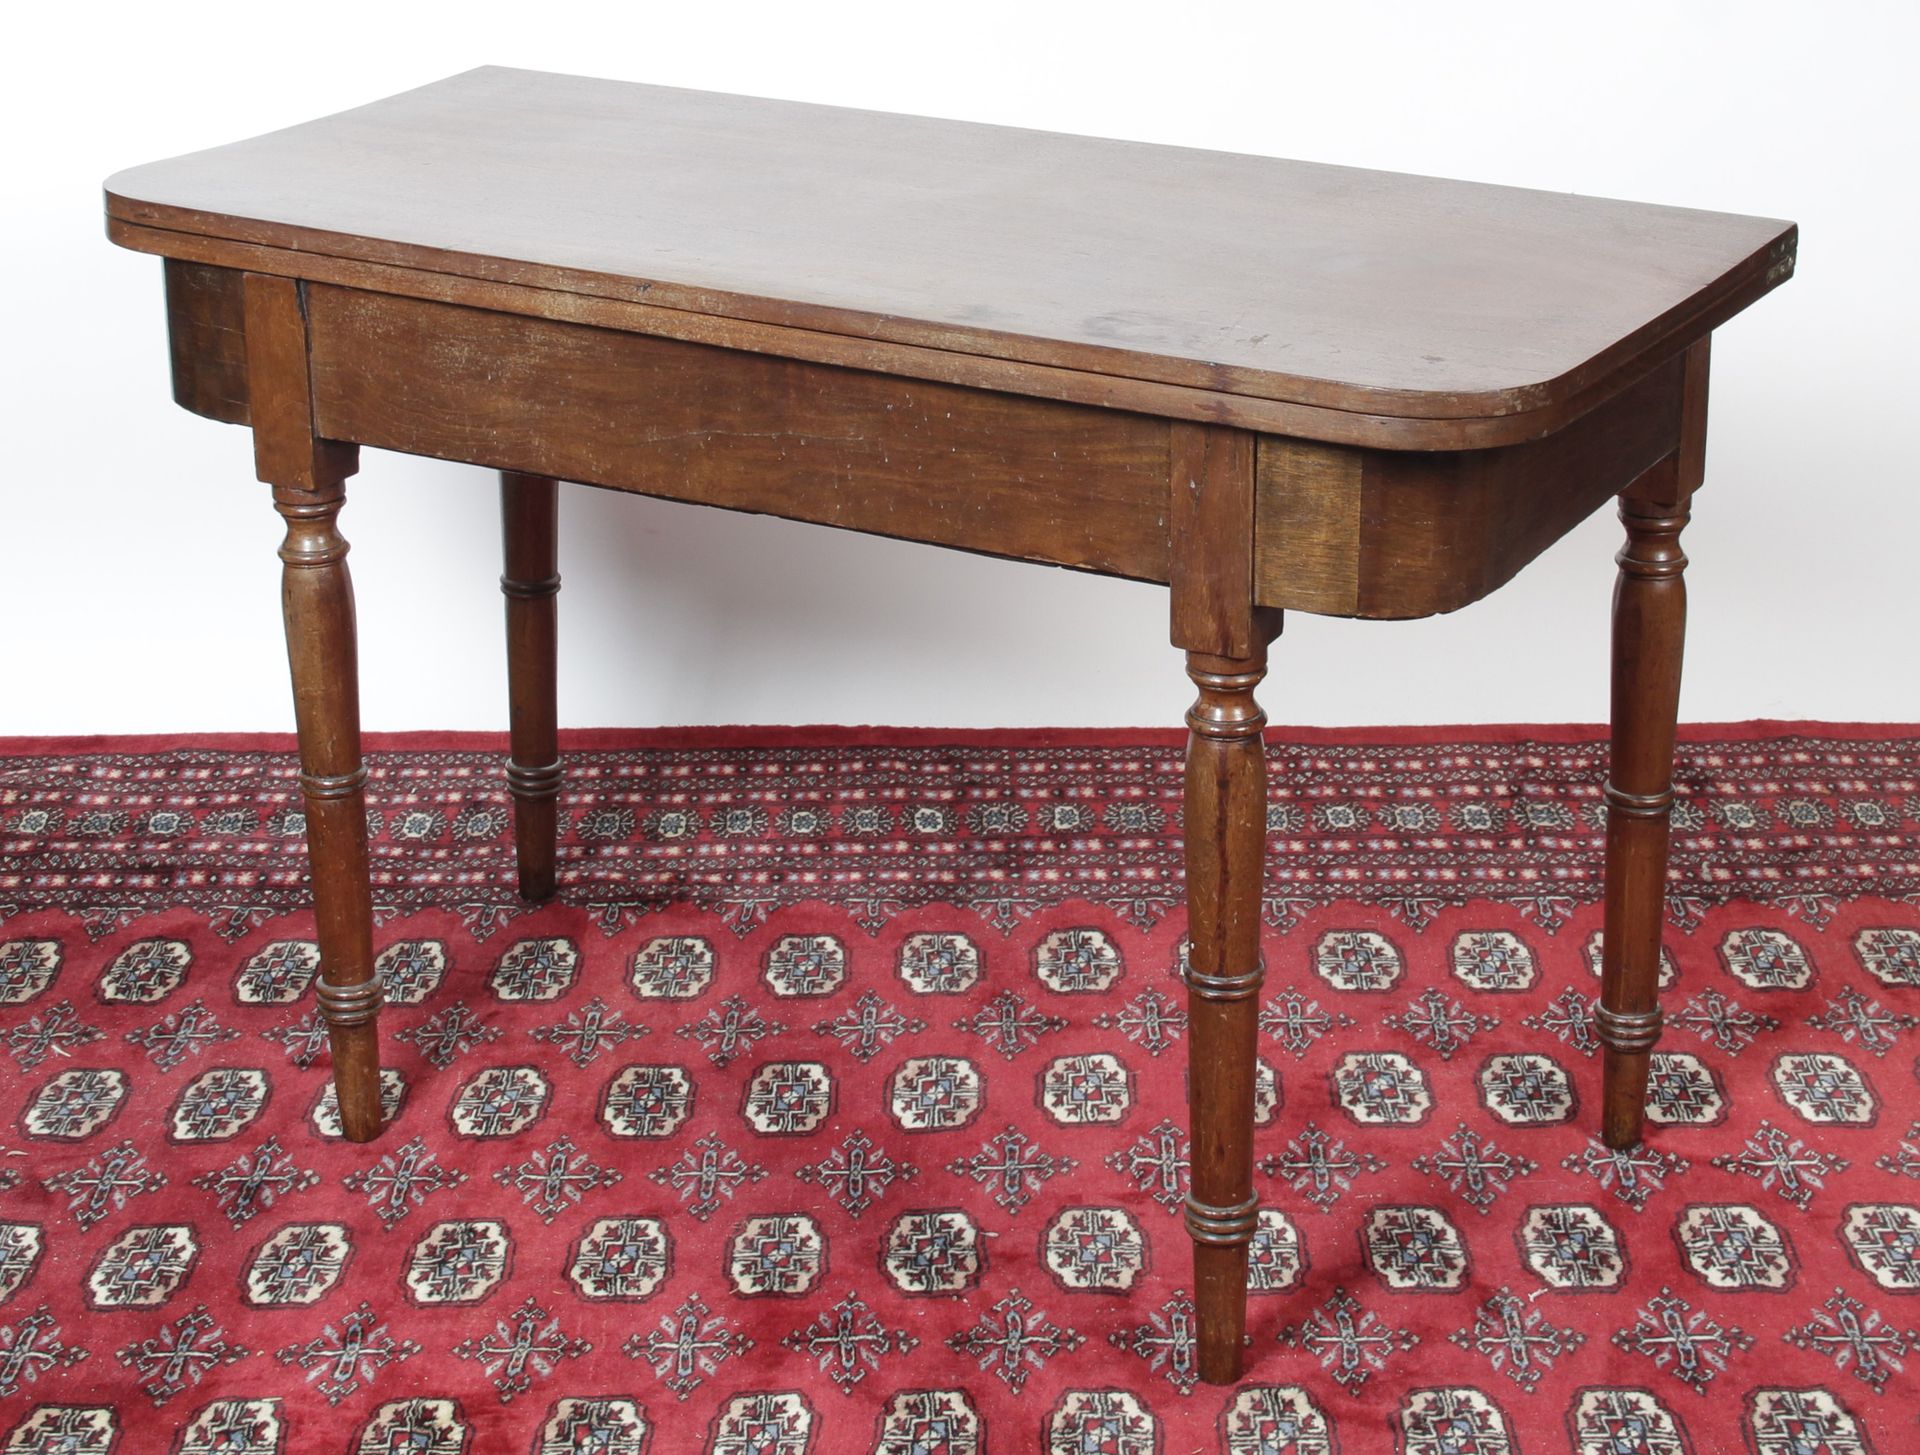 Null 控制台表格

该桌由桃花心木和桃花心木饰面制成，桌面可旋转和打开，可用作餐桌或工作桌。它由四条锥形和环形栏杆腿支撑。

时期：19 世纪。 

收起时&hellip;